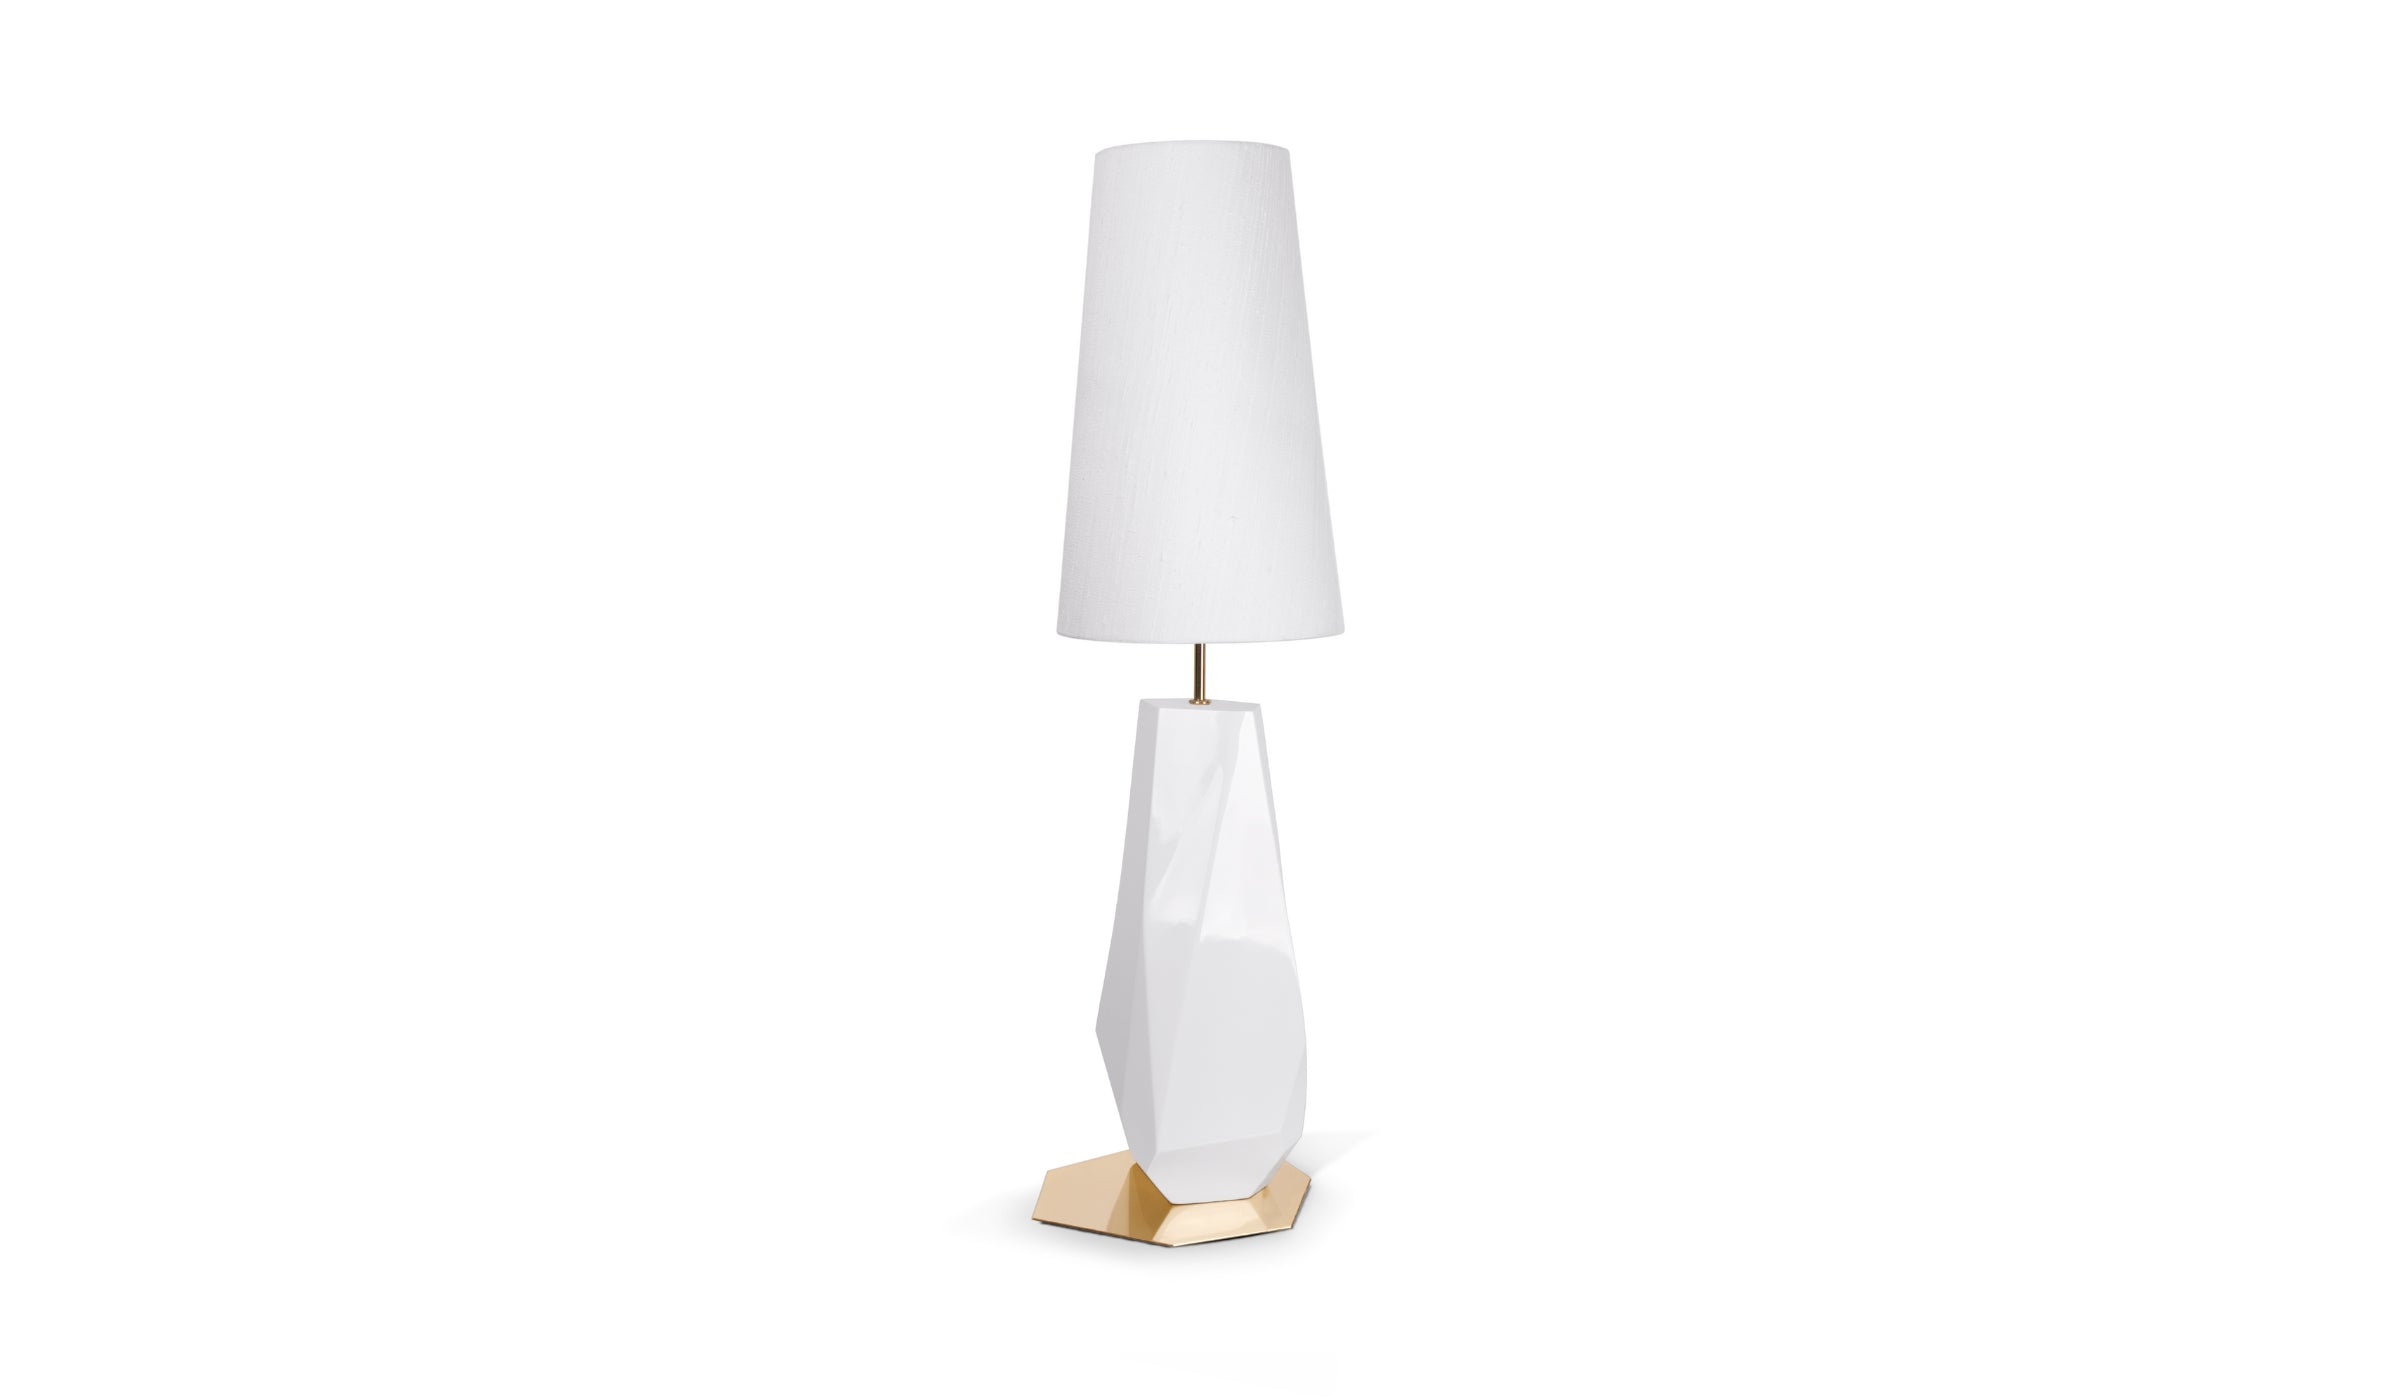 Feel Big - Lampe de table blanche, éclairage design en fibre de verre, feuilles d'argent, acier inoxydable et soie